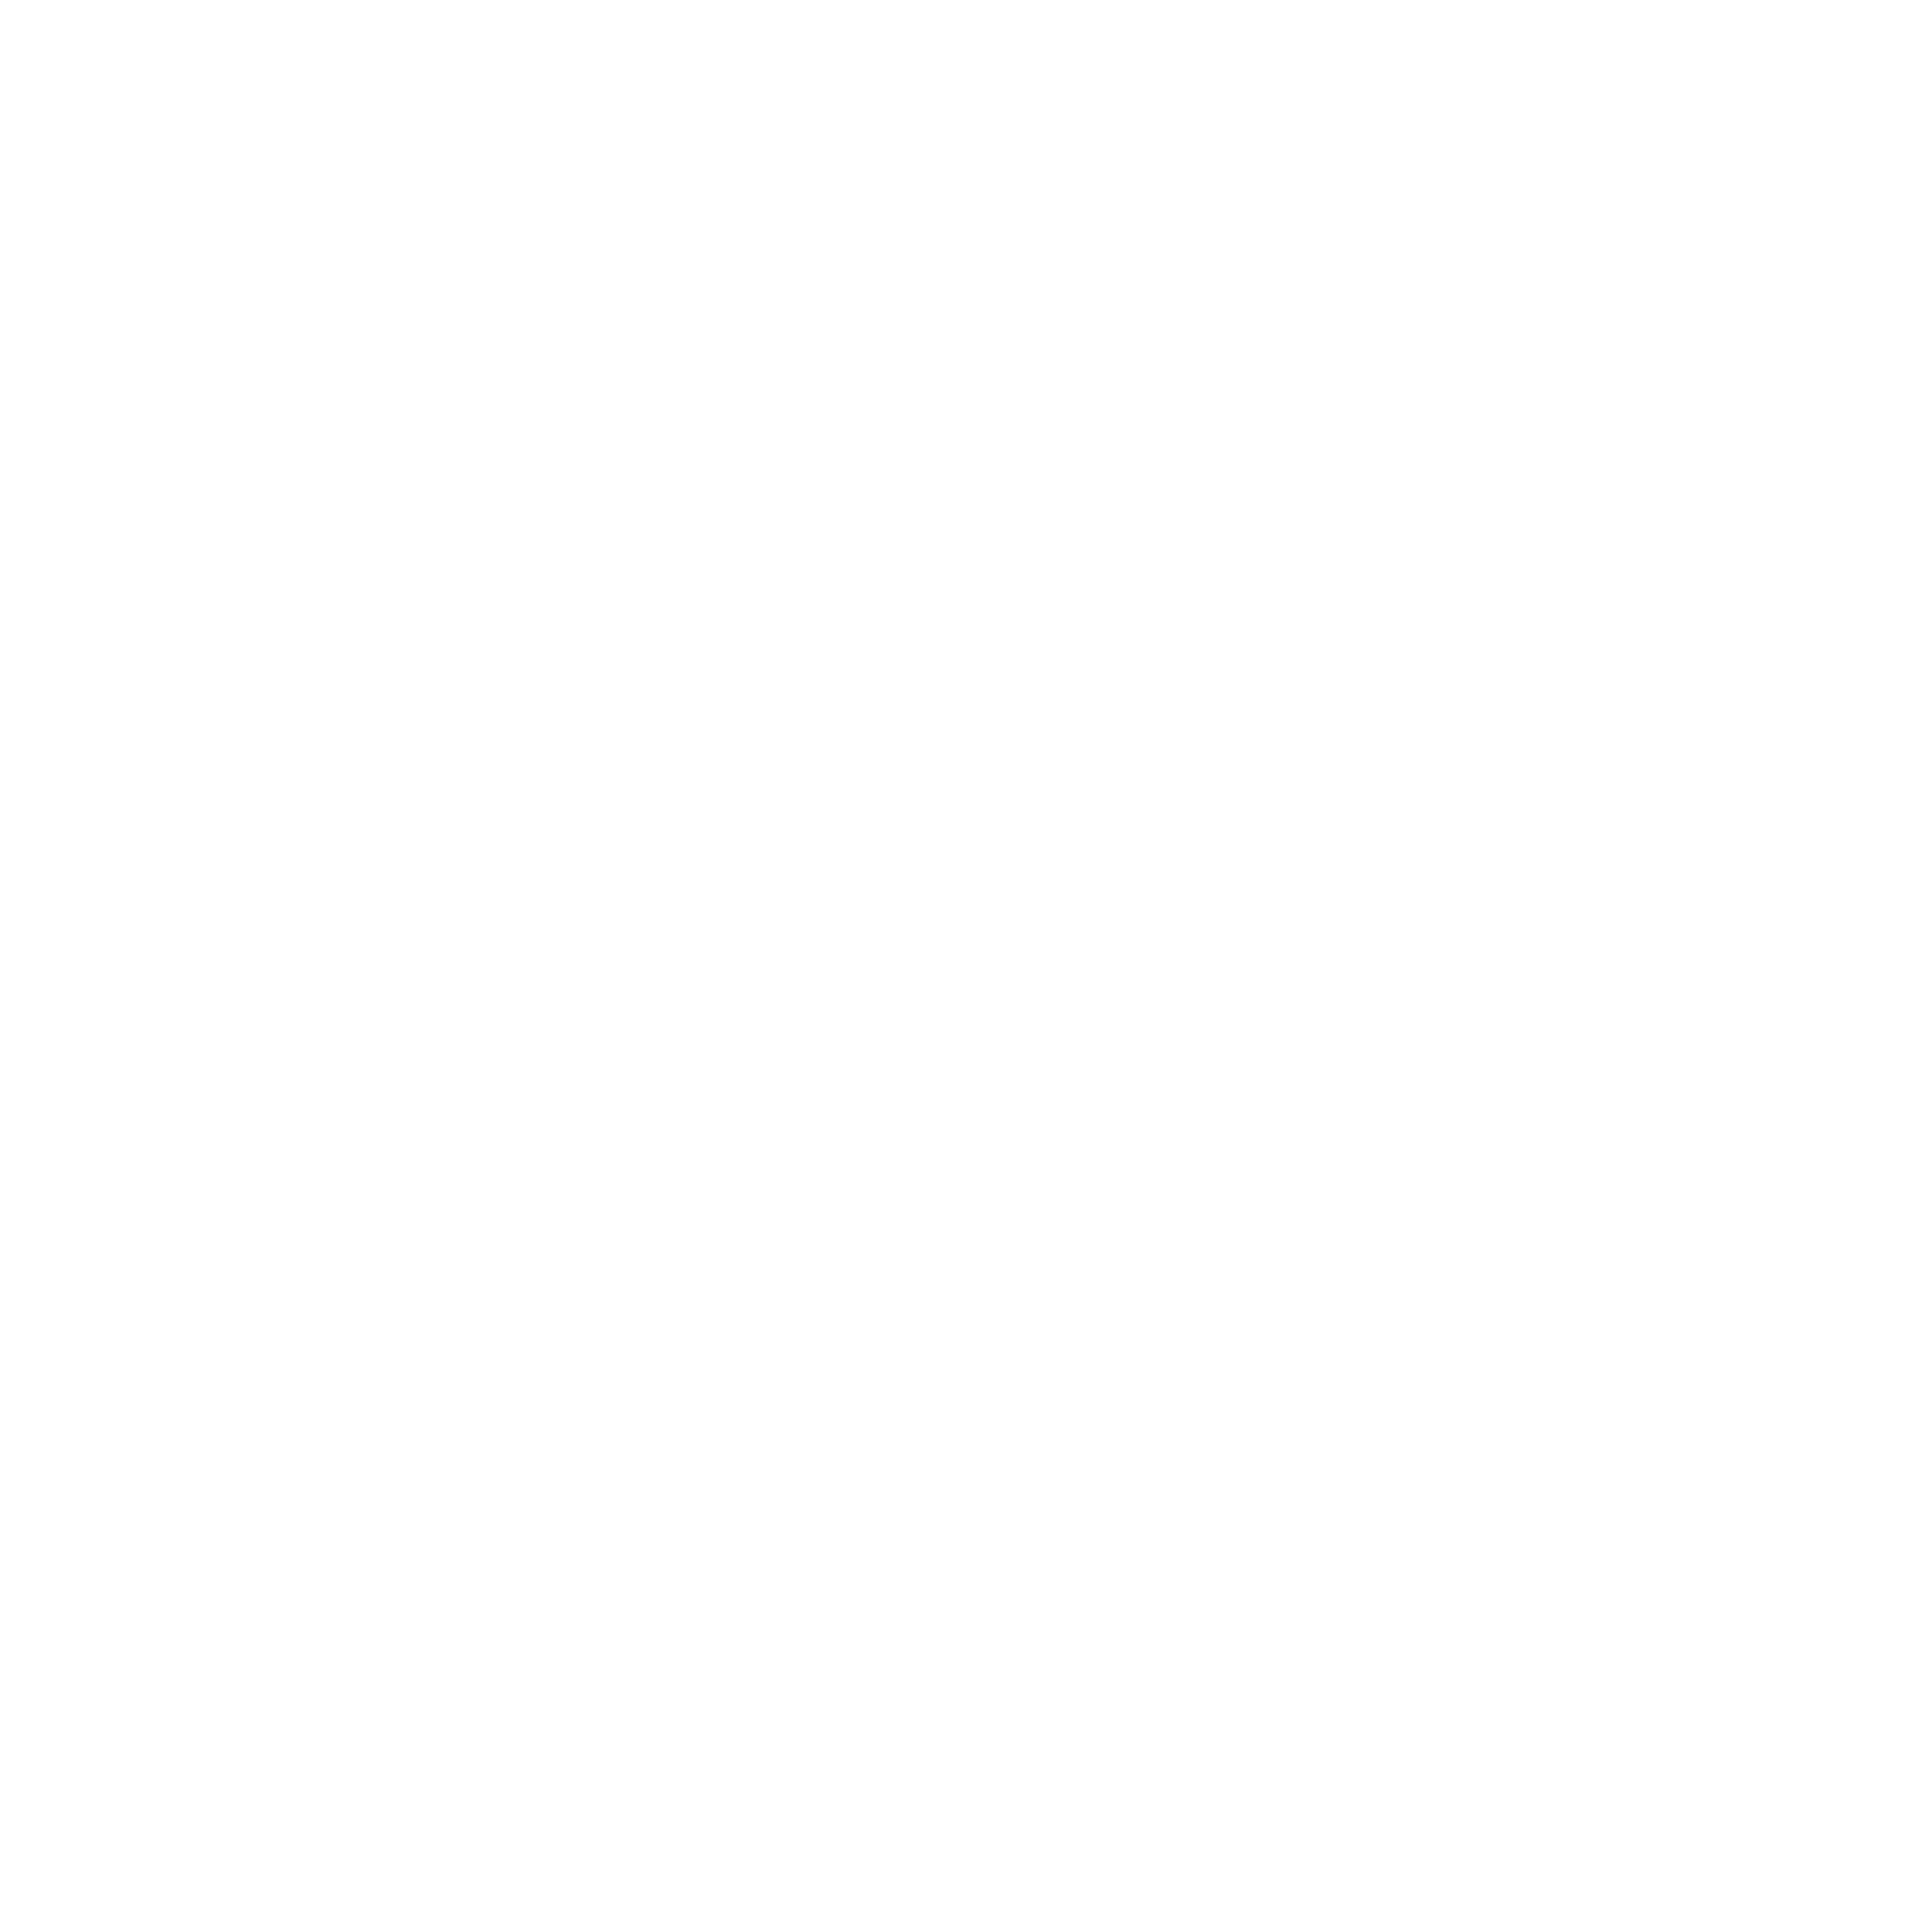 DoctorMultimedia